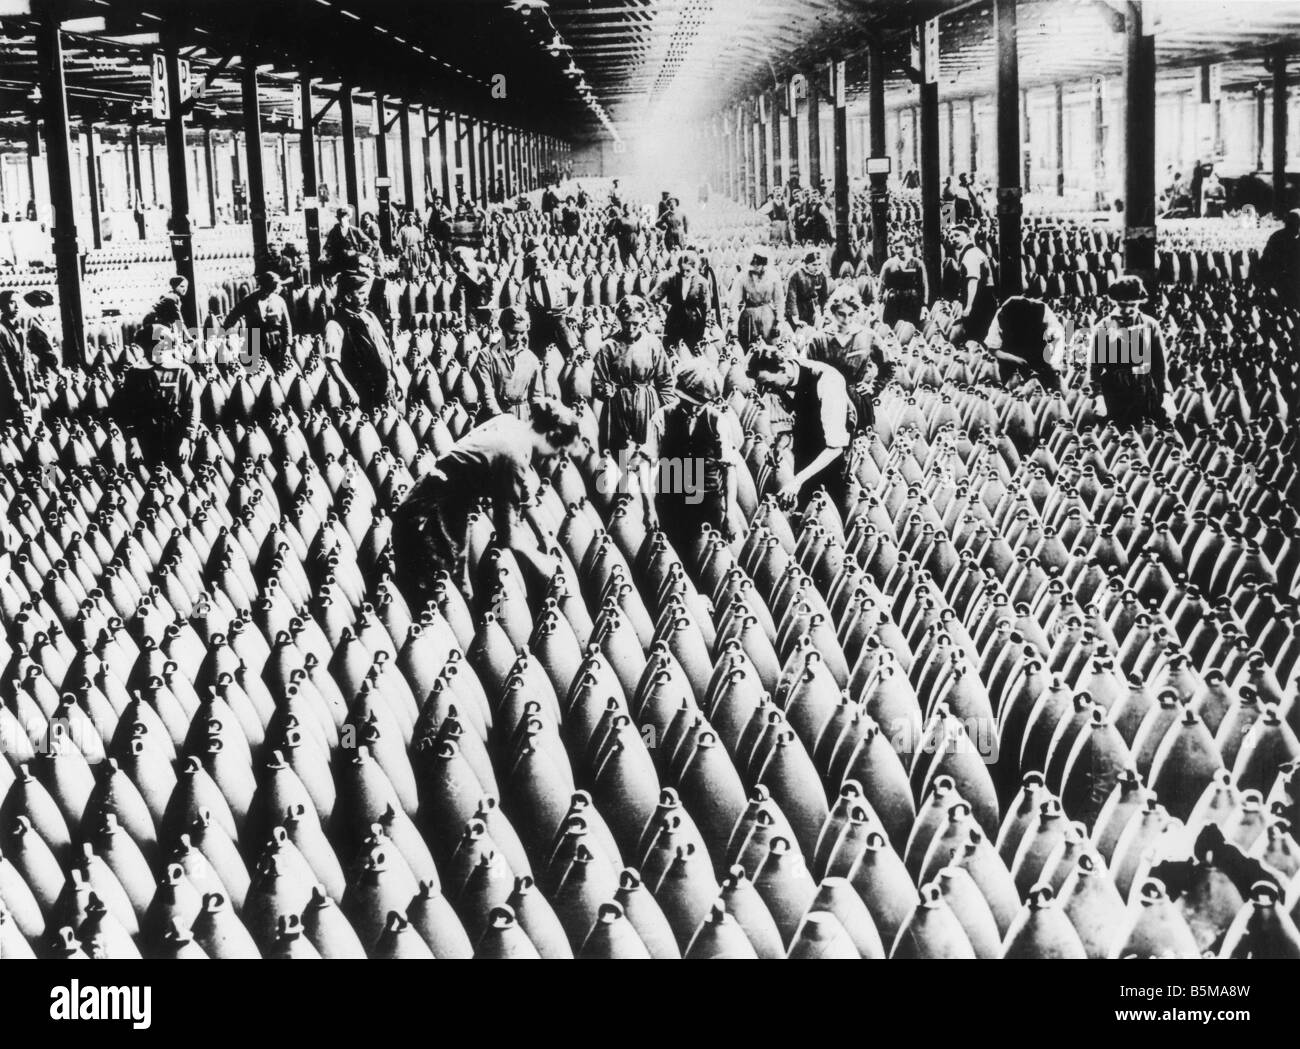 2 G55 R1 1918 B E Arbeiter in einer Munition speichern 1918 Geschichte Weltkrieg Rüstungsindustrie, die England Männer und Frauen bei der Arbeit in der munit Stockfoto